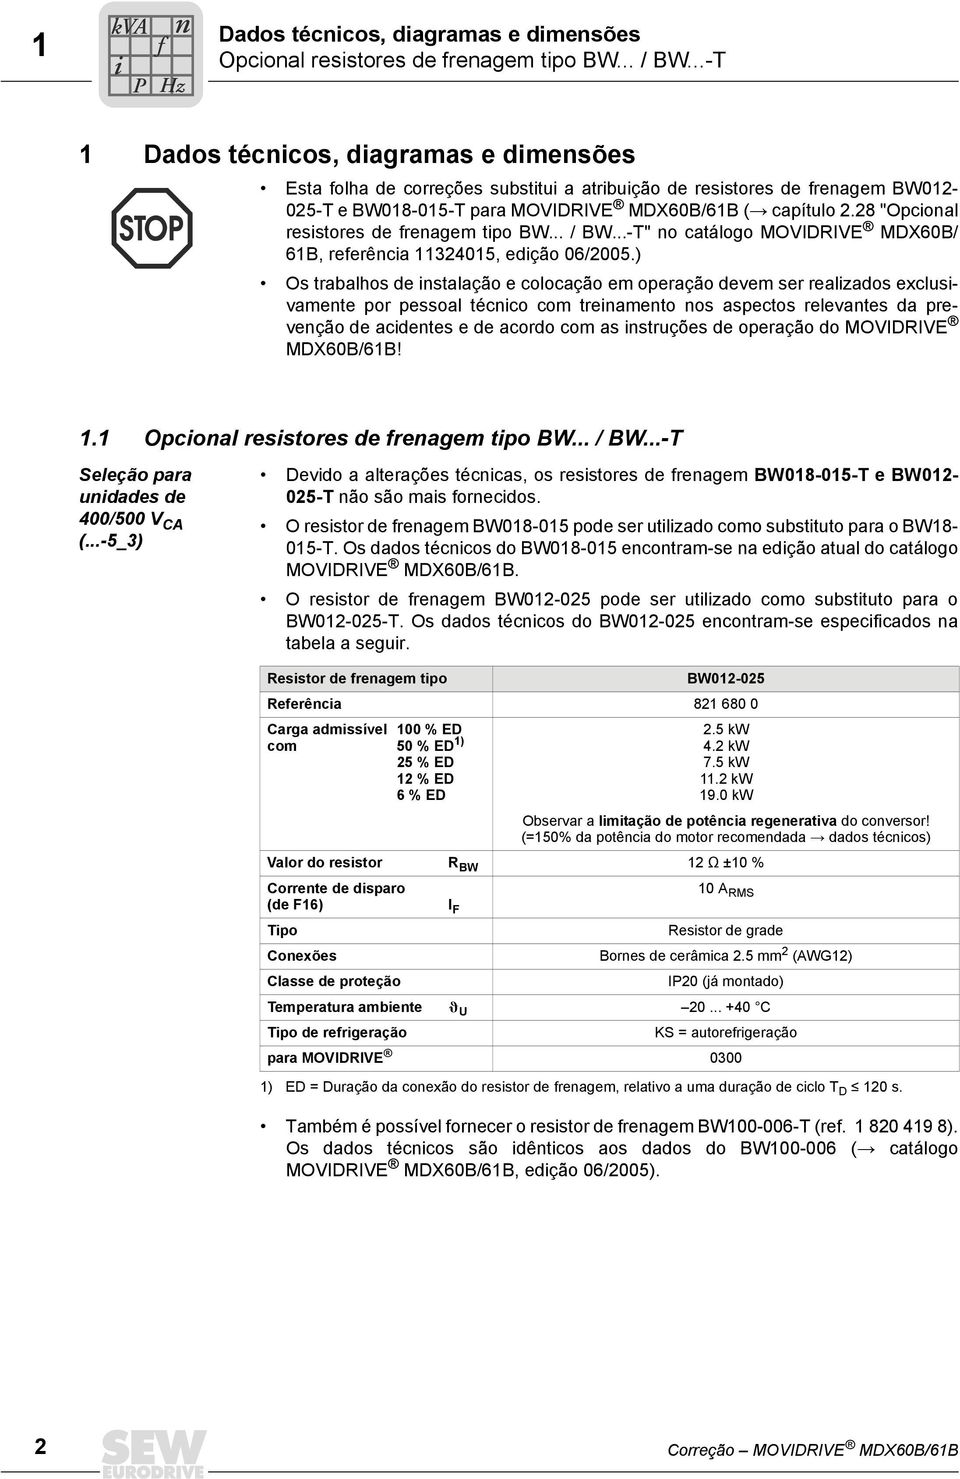 28 "Opcional resistores de frenagem tipo BW... / BW...-T" no catálogo MOVIDRIVE MDX60B/ 61B, referência 11324015, edição 06/2005.